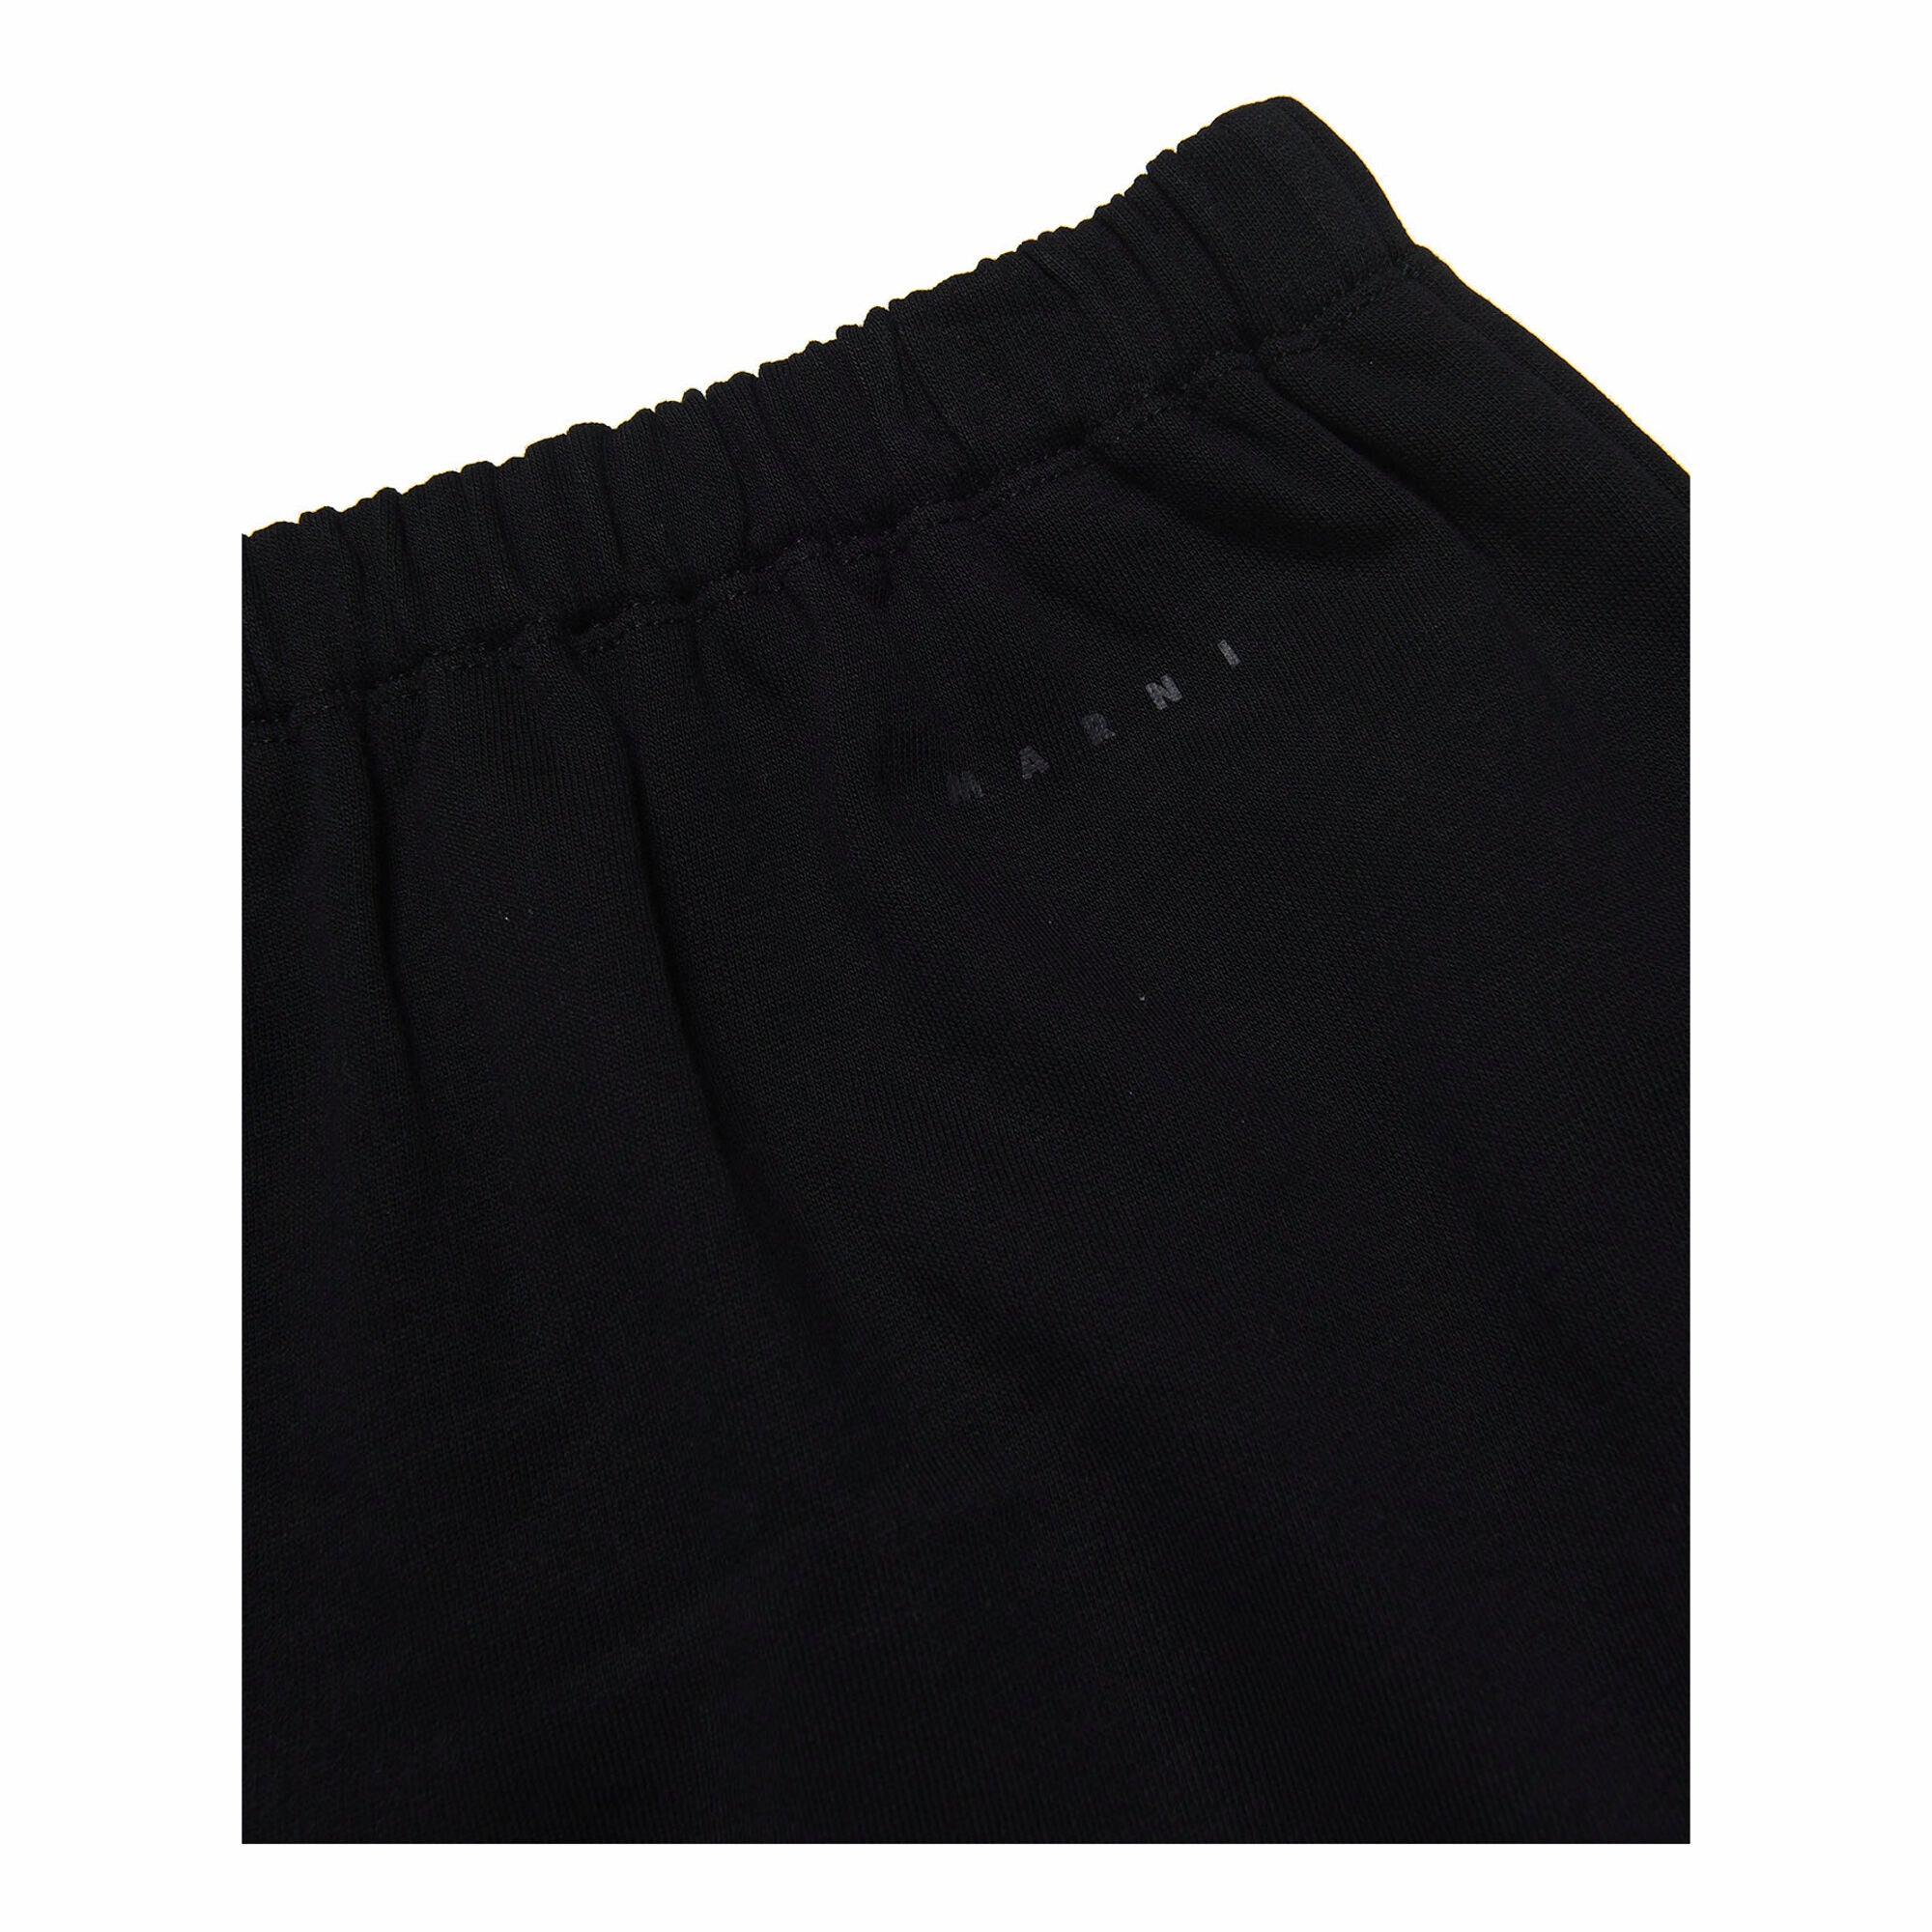 Girls Black Sequin Cotton Skirt